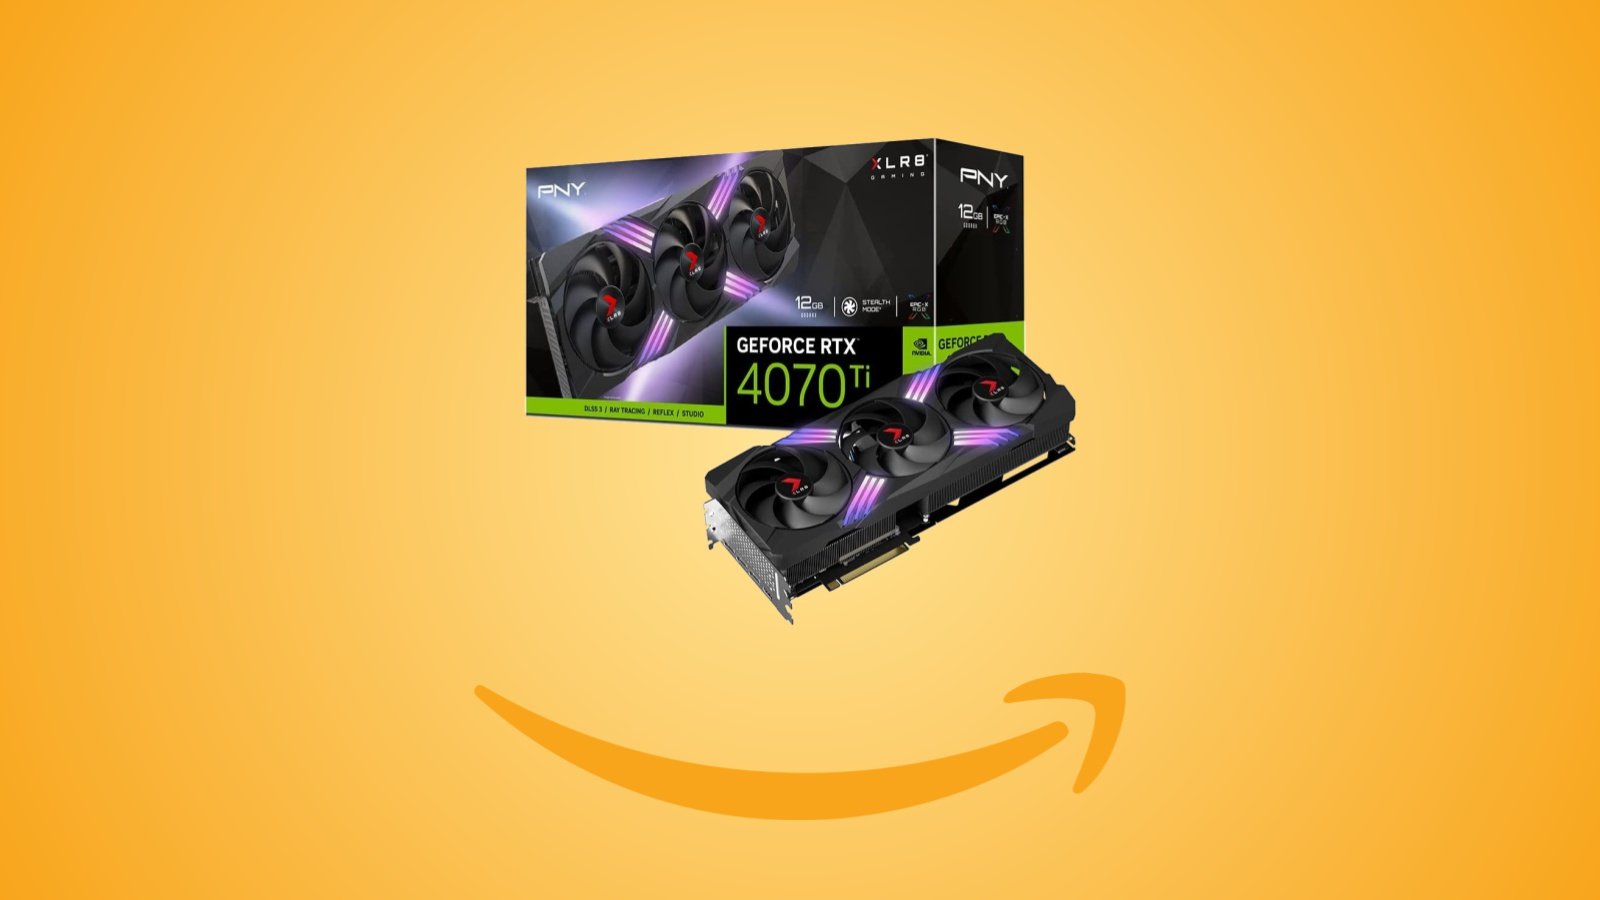 Offerte Amazon: scheda grafica PNY GeForce RTX 4070Ti da 12 GB al prezzo minimo storico